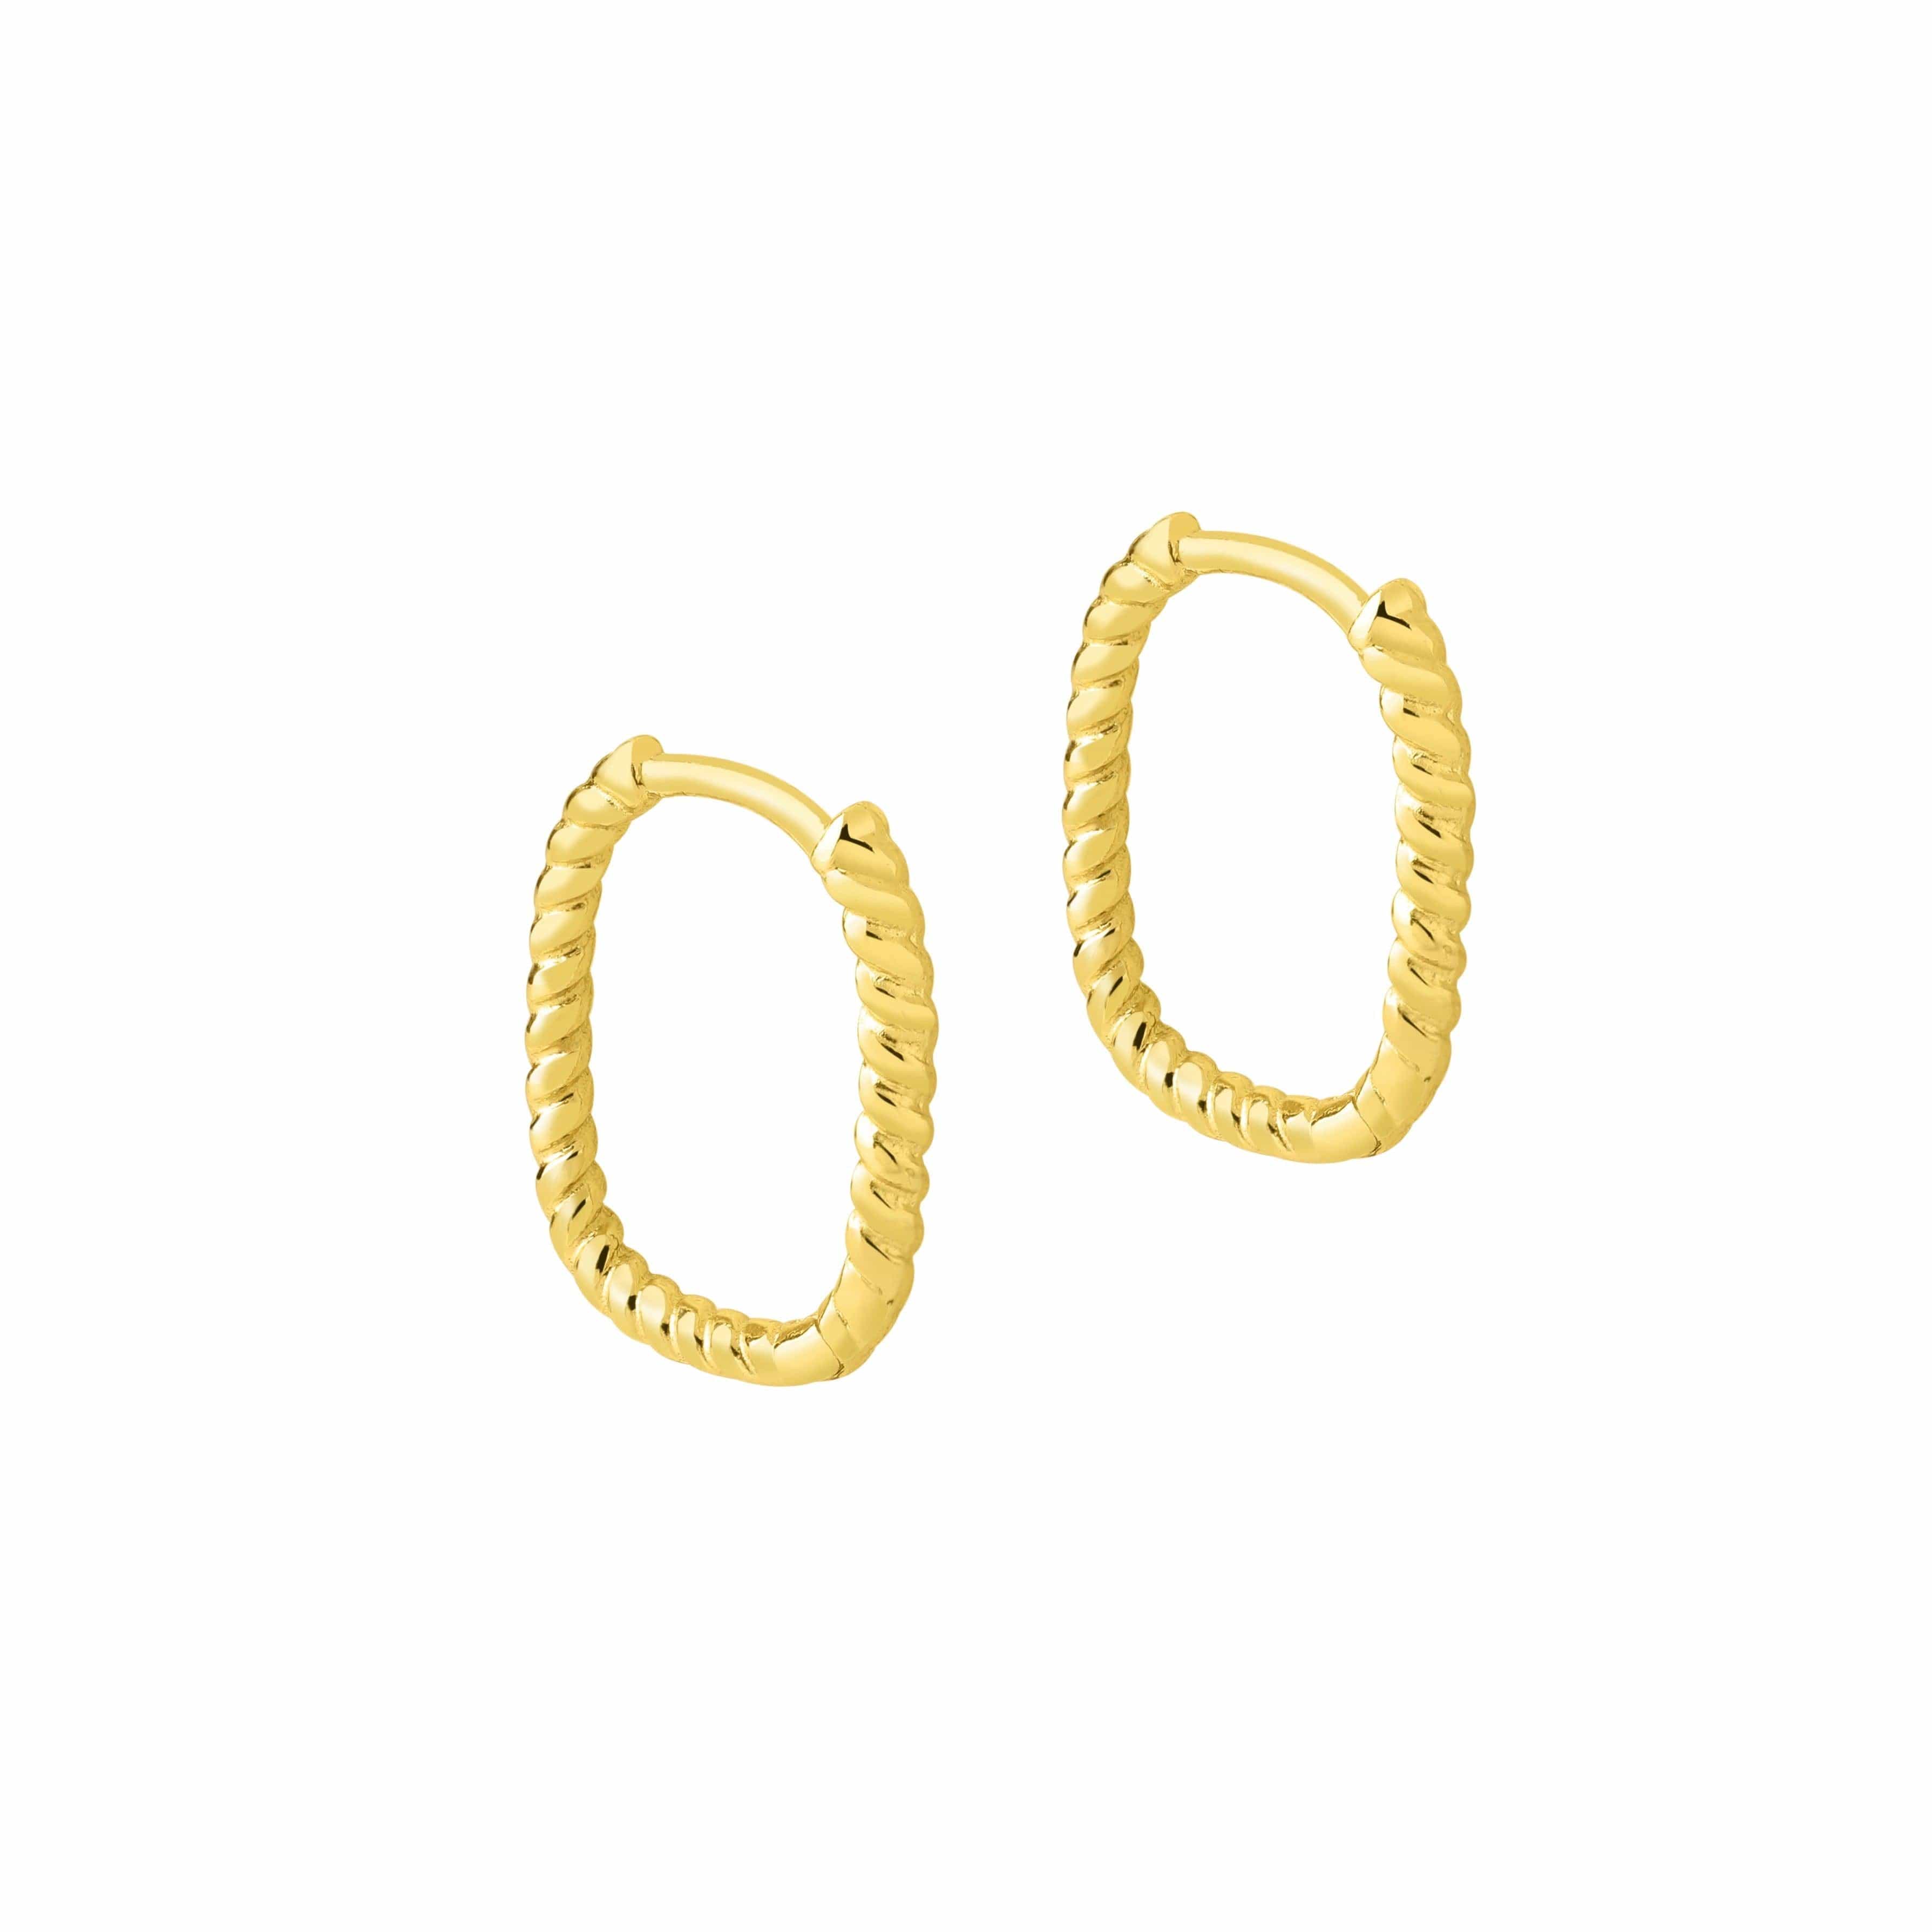 Rope Square Hoop Earrings Gold plated, huggies met touw motief verguld